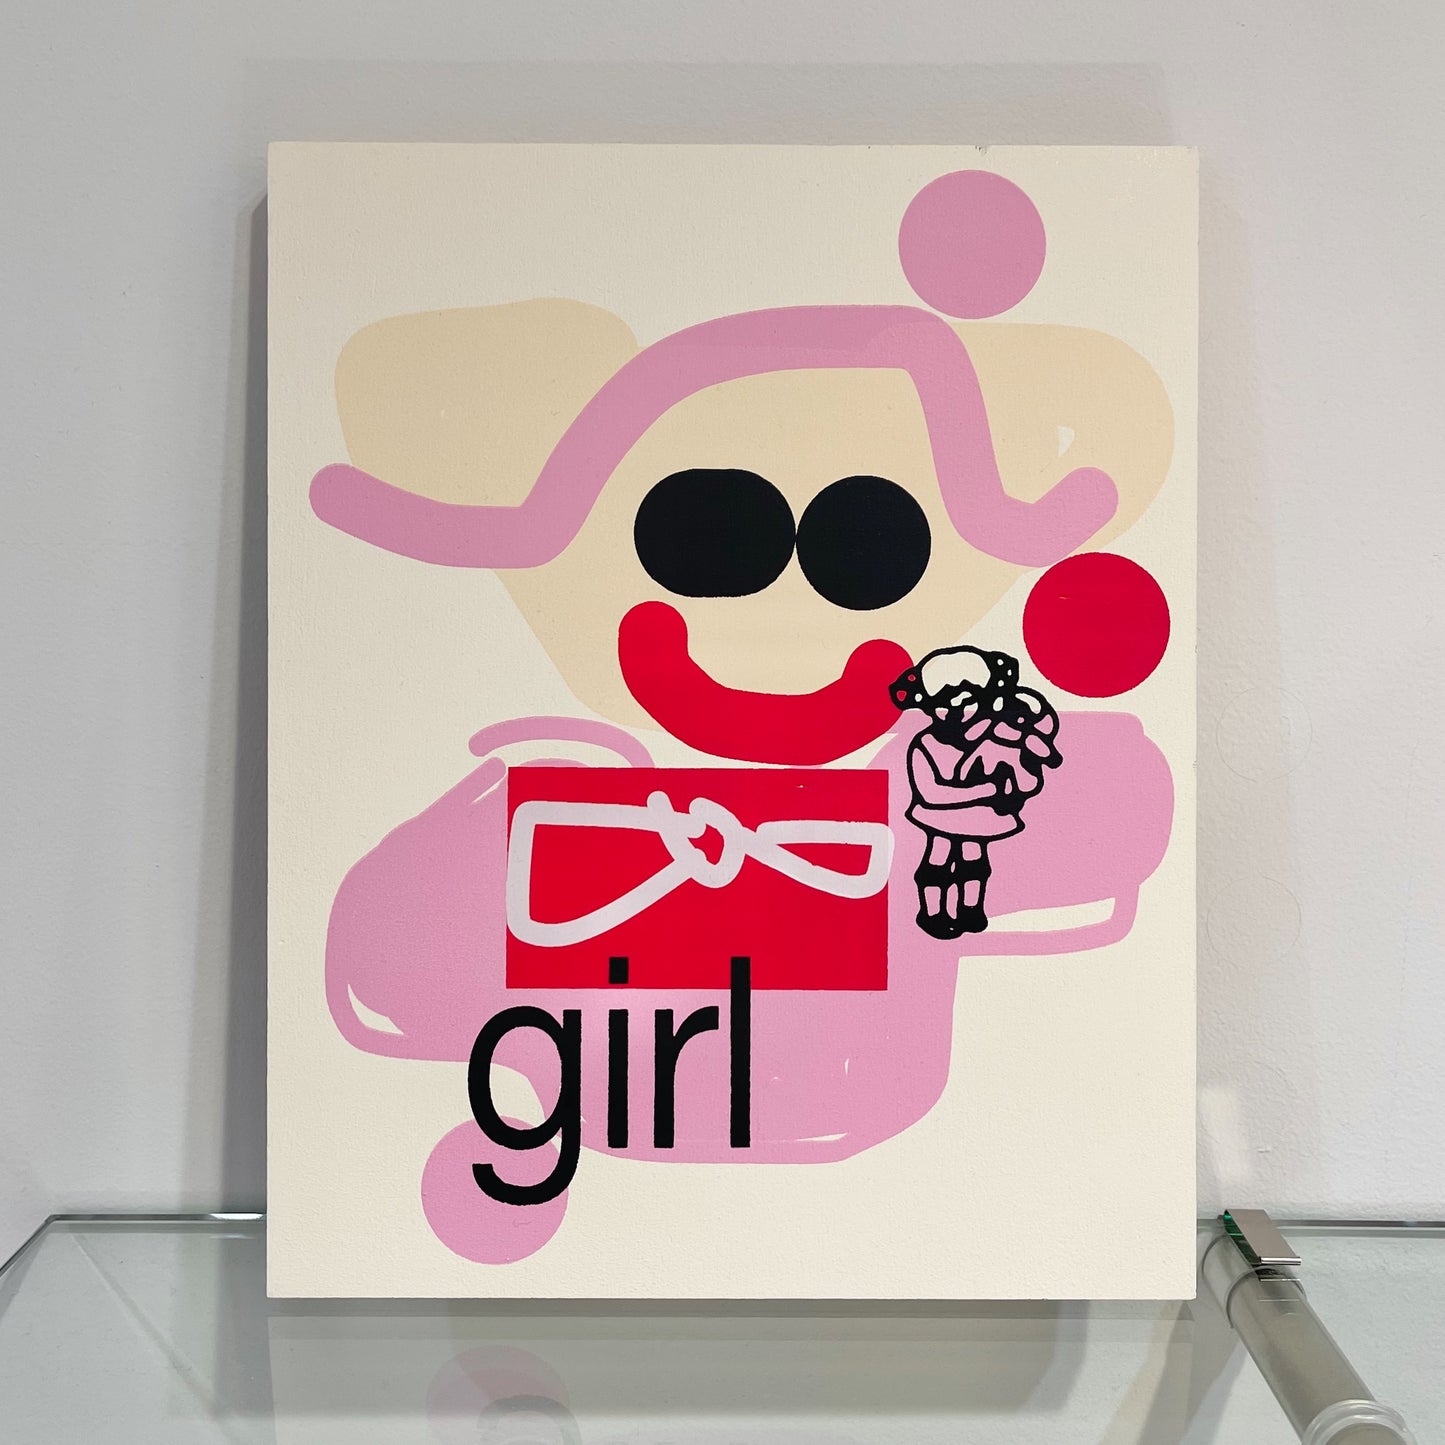 morio / 絵画 "girl 2"